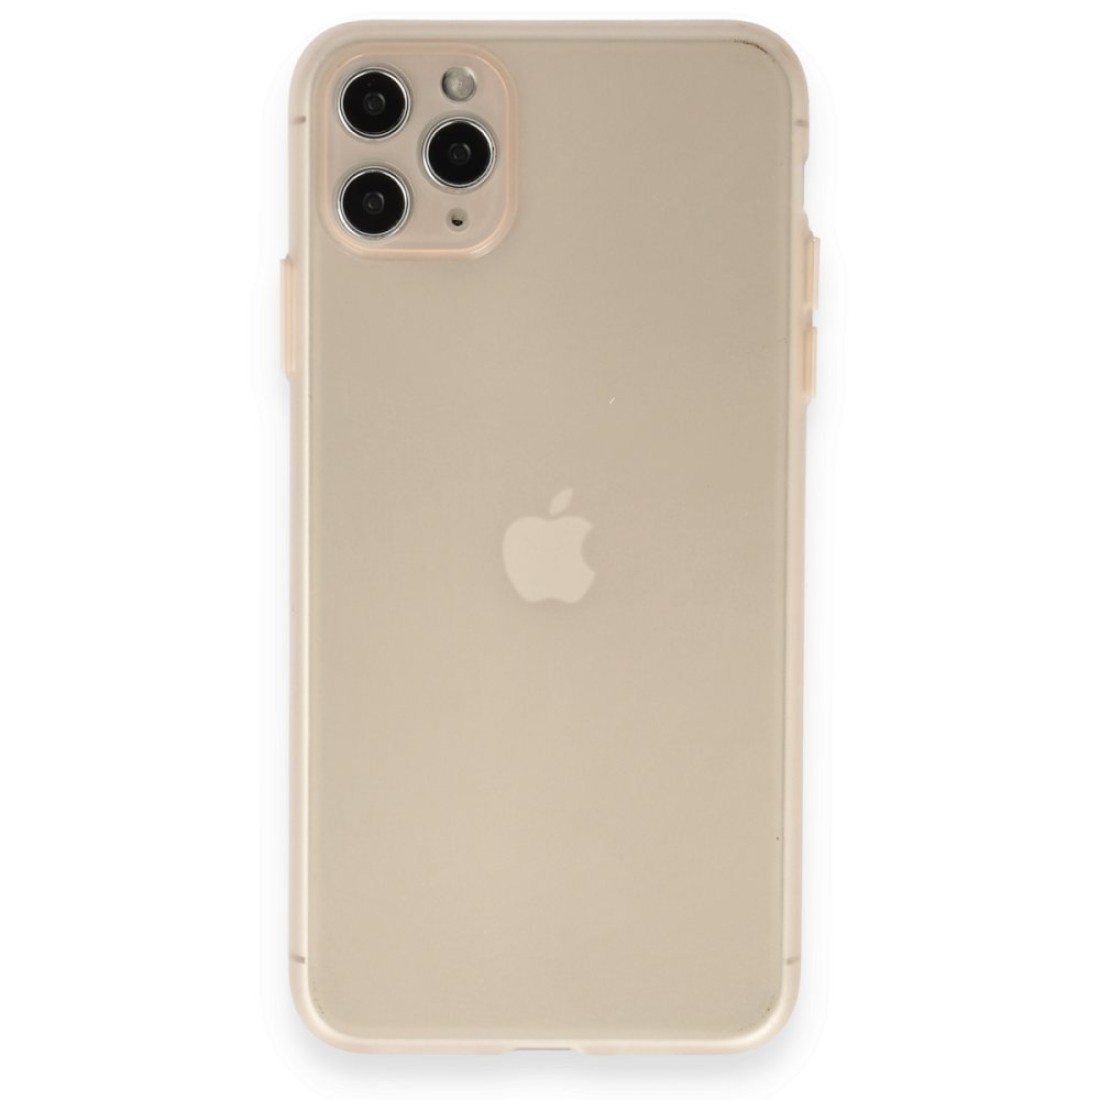 Apple iPhone 11 Pro Kılıf Puma Silikon - Gold